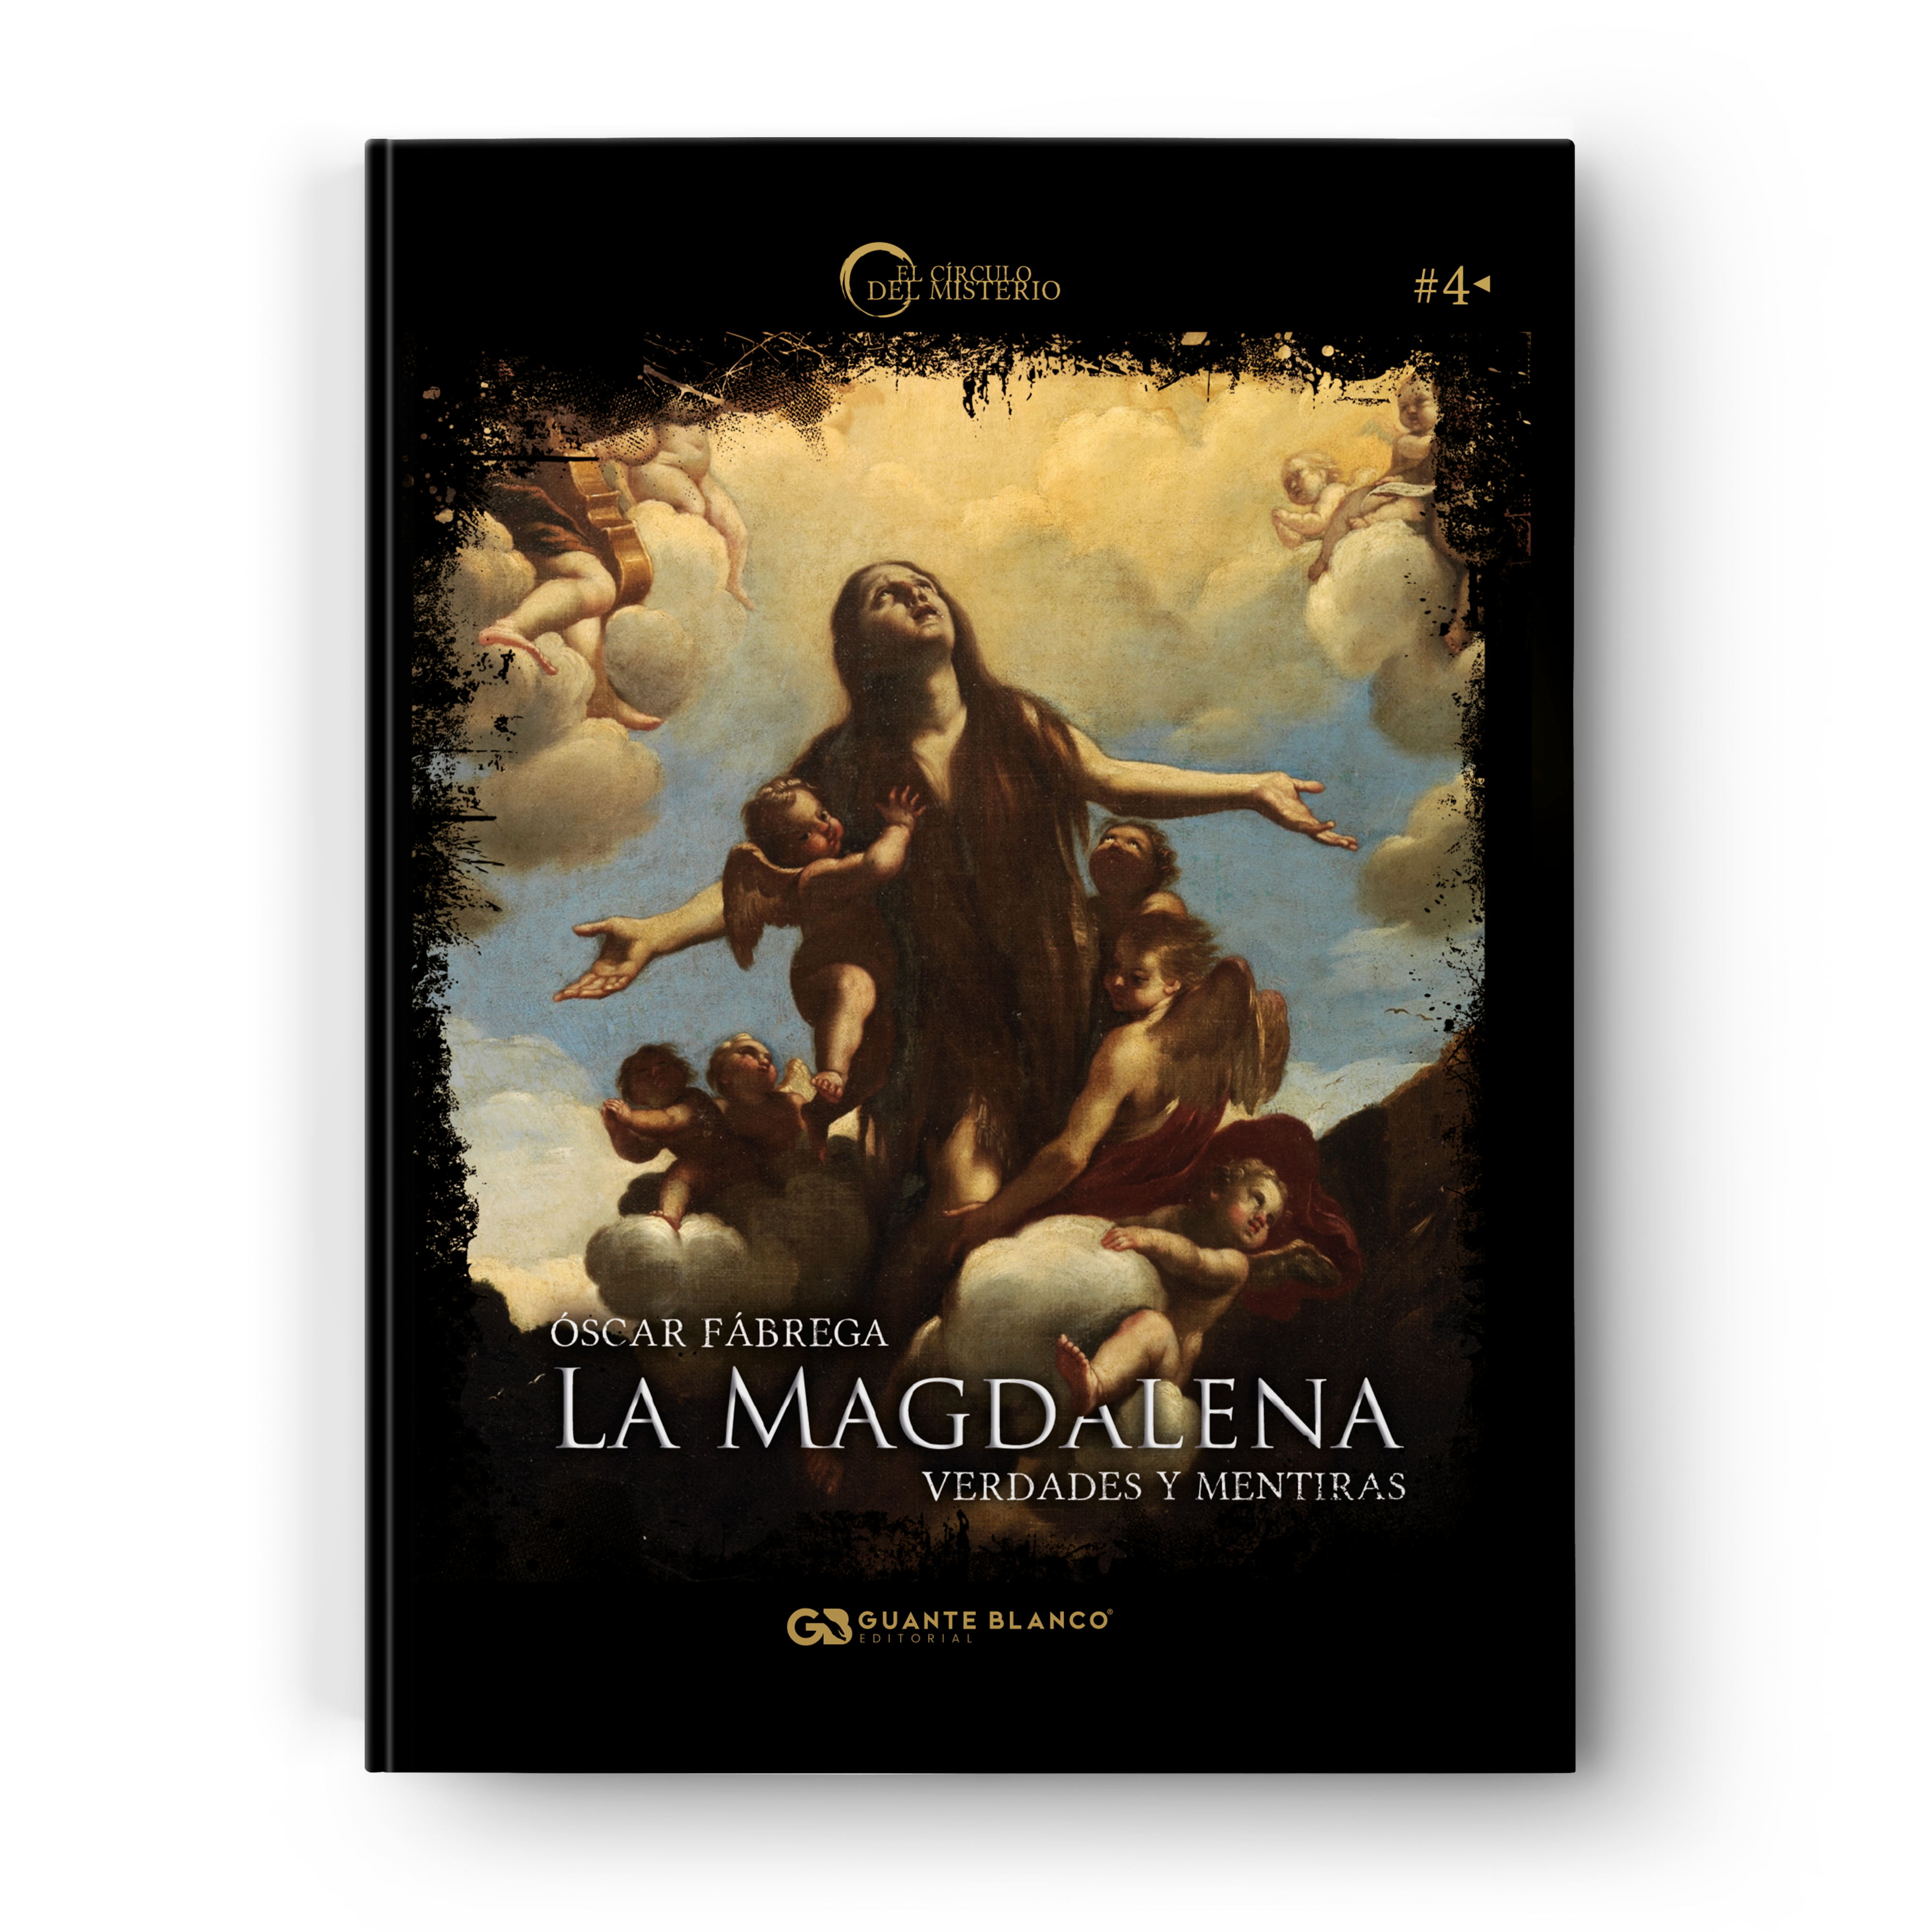 La Magdalena: verdades y mentiras